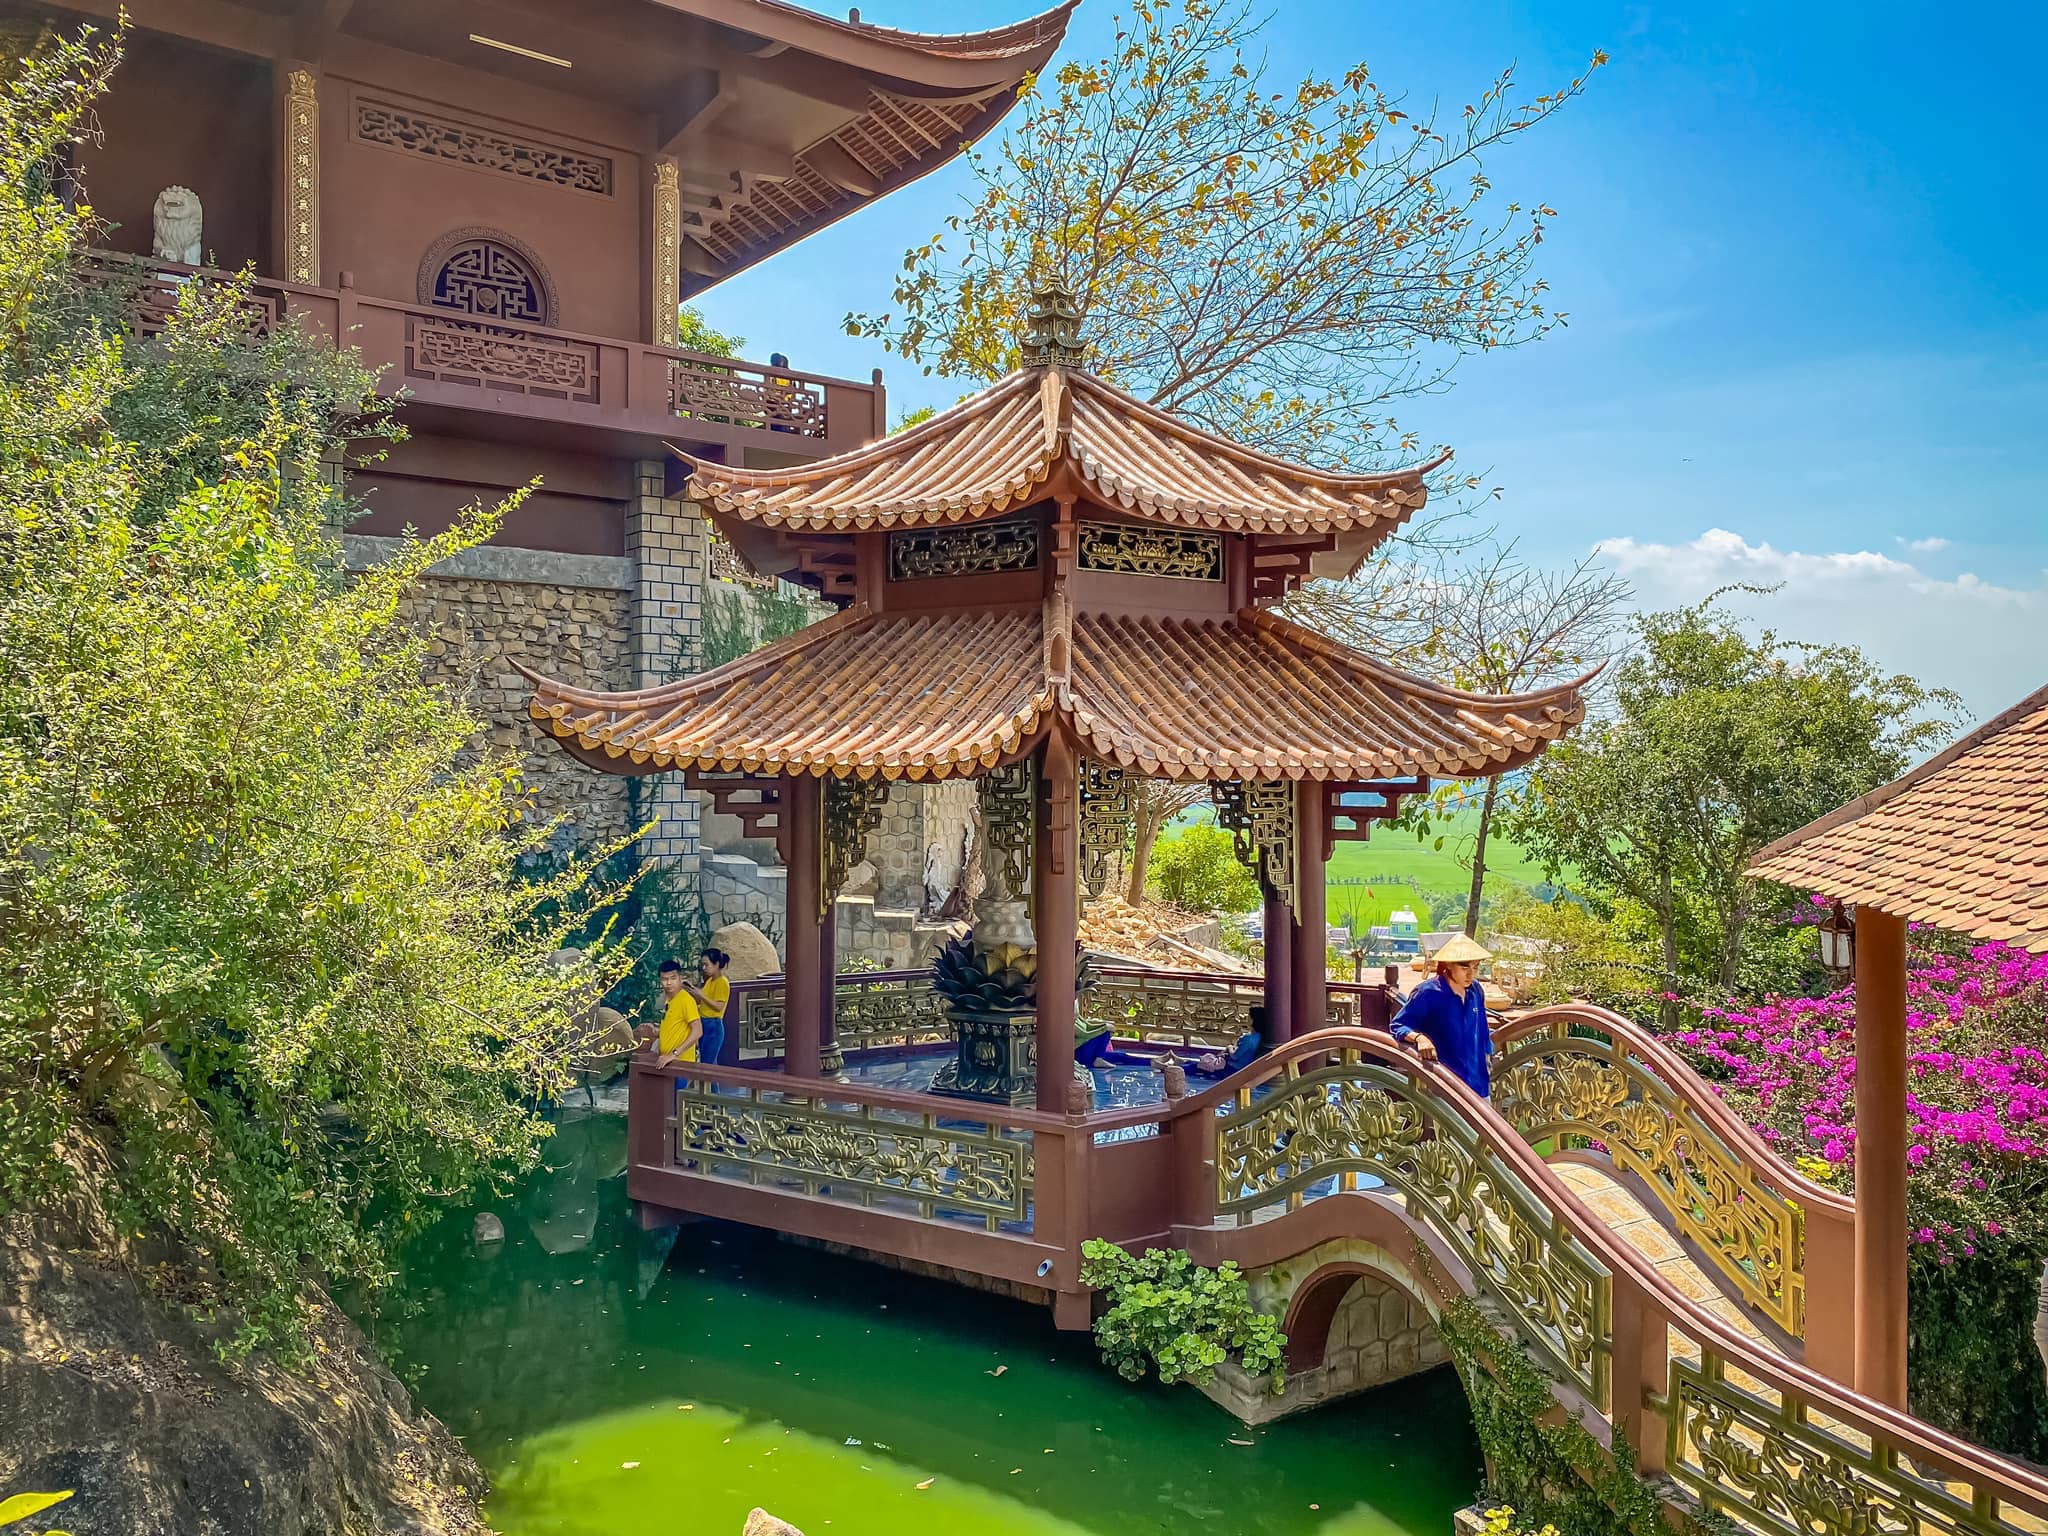 Vãn cảnh Chùa Hang (Phước Điền Tự) - Ngôi chùa tuyệt đẹp ở An Giang